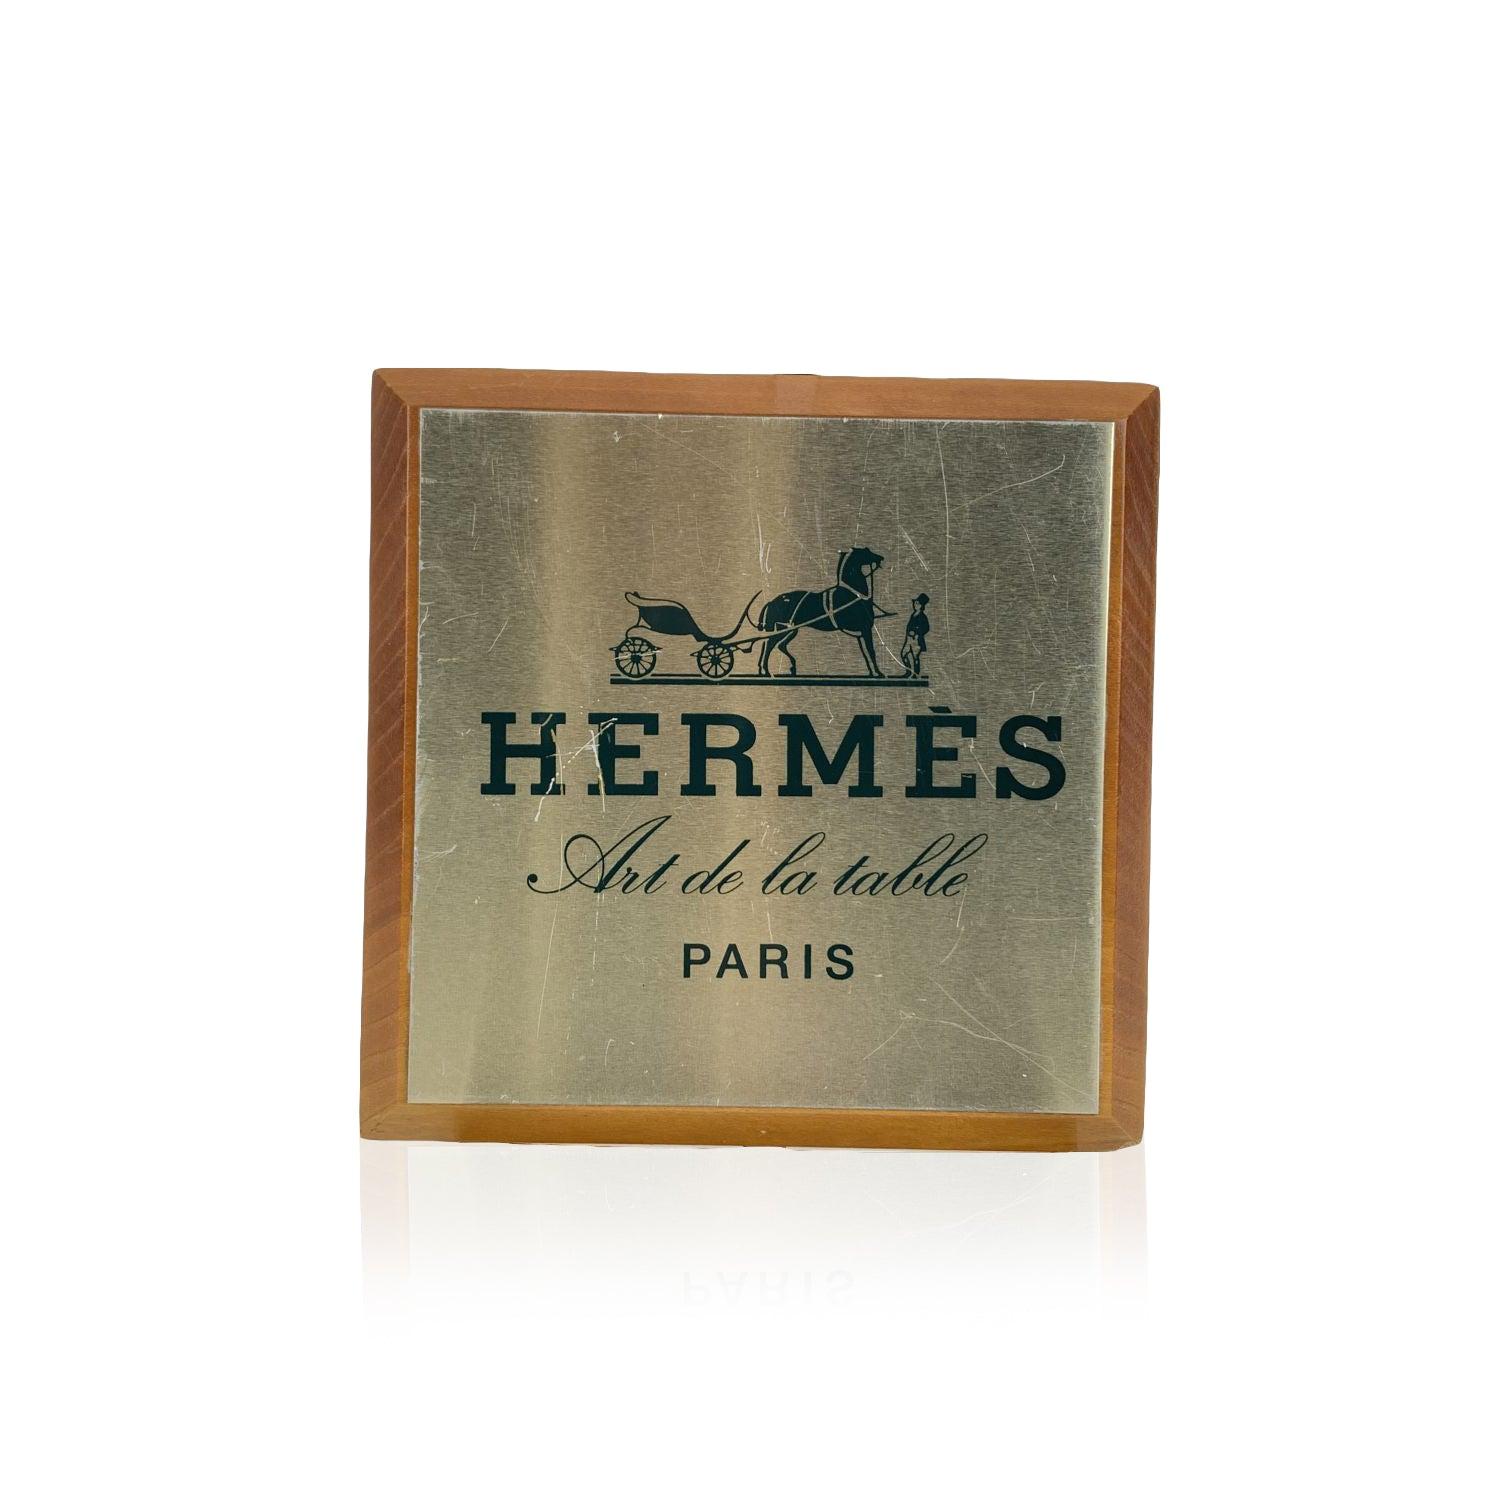 Assiette d'étagère Vintage Hermes avec le lettrage 'Hermes Art de la table - Paris'. Forme carrée. Fabriqué en bois, avec la partie supérieure en métal doré. Dimensions : 6.5 x 6.5 inches - 16,5 x 16,5 cm Détails MATERIAL : Bois COULEUR : Or MODÈLE